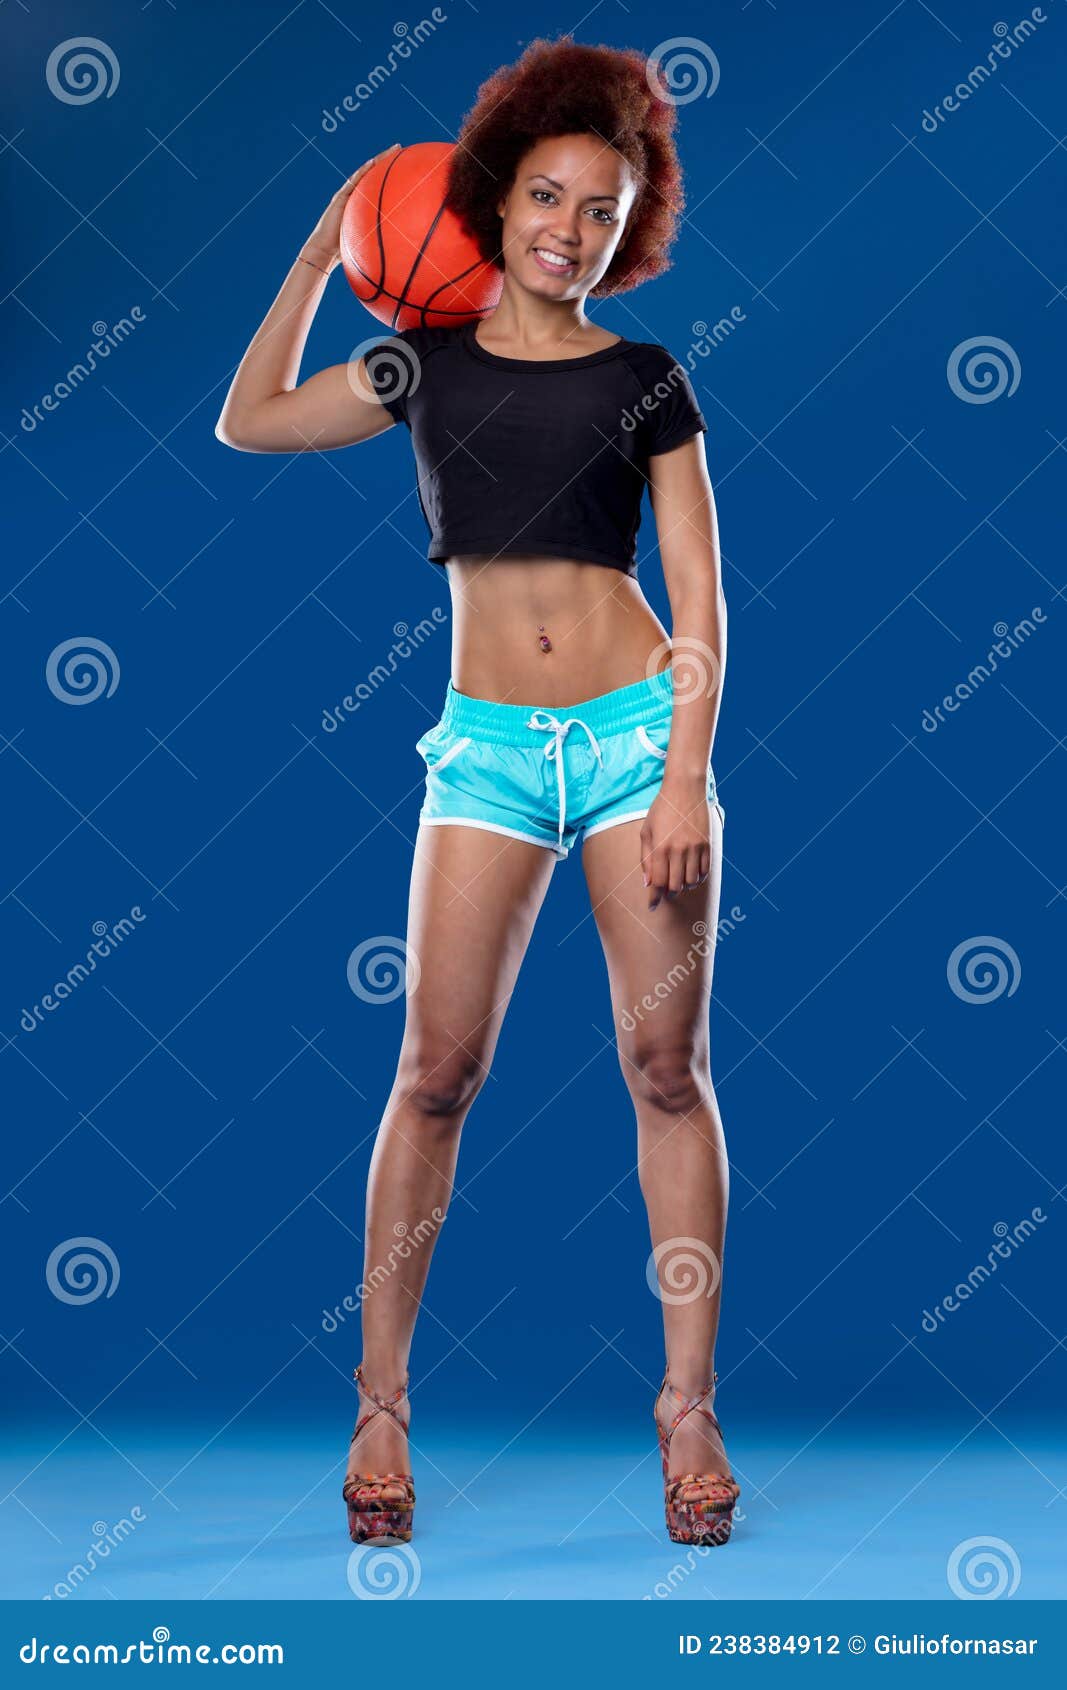 Ropa deportiva de mujer en azul en una hermosa modelo delgada deportista  posando en el gimnasio pantalones cortos y top azules